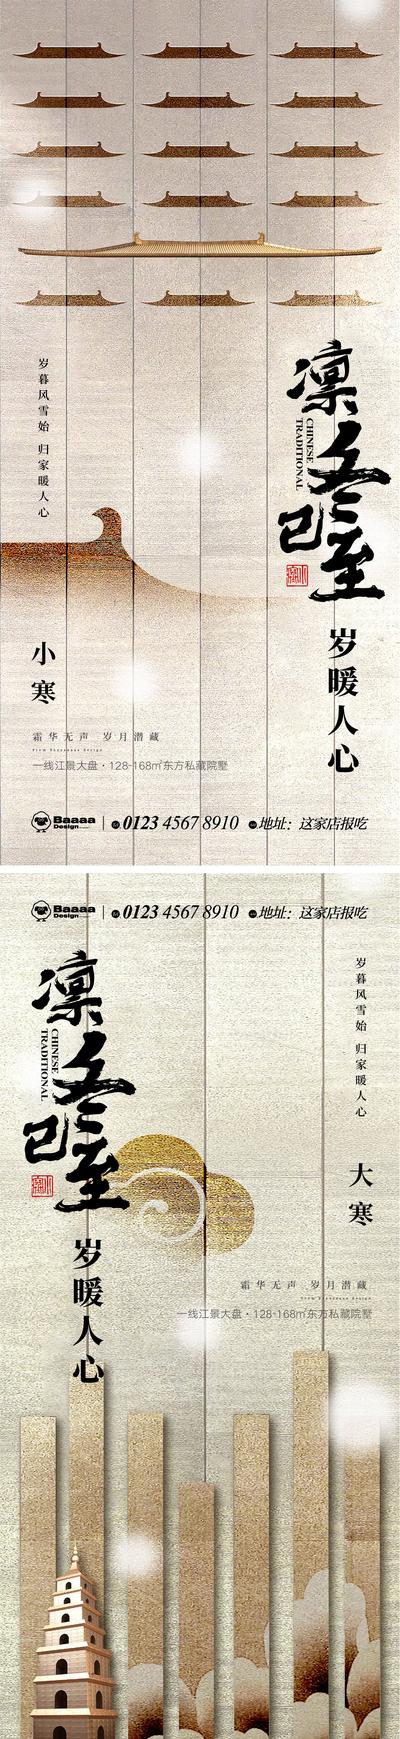 南门网 节气 中式 小寒 大寒 传统节日 新中式 排版 书法 大气 刷屏 微信